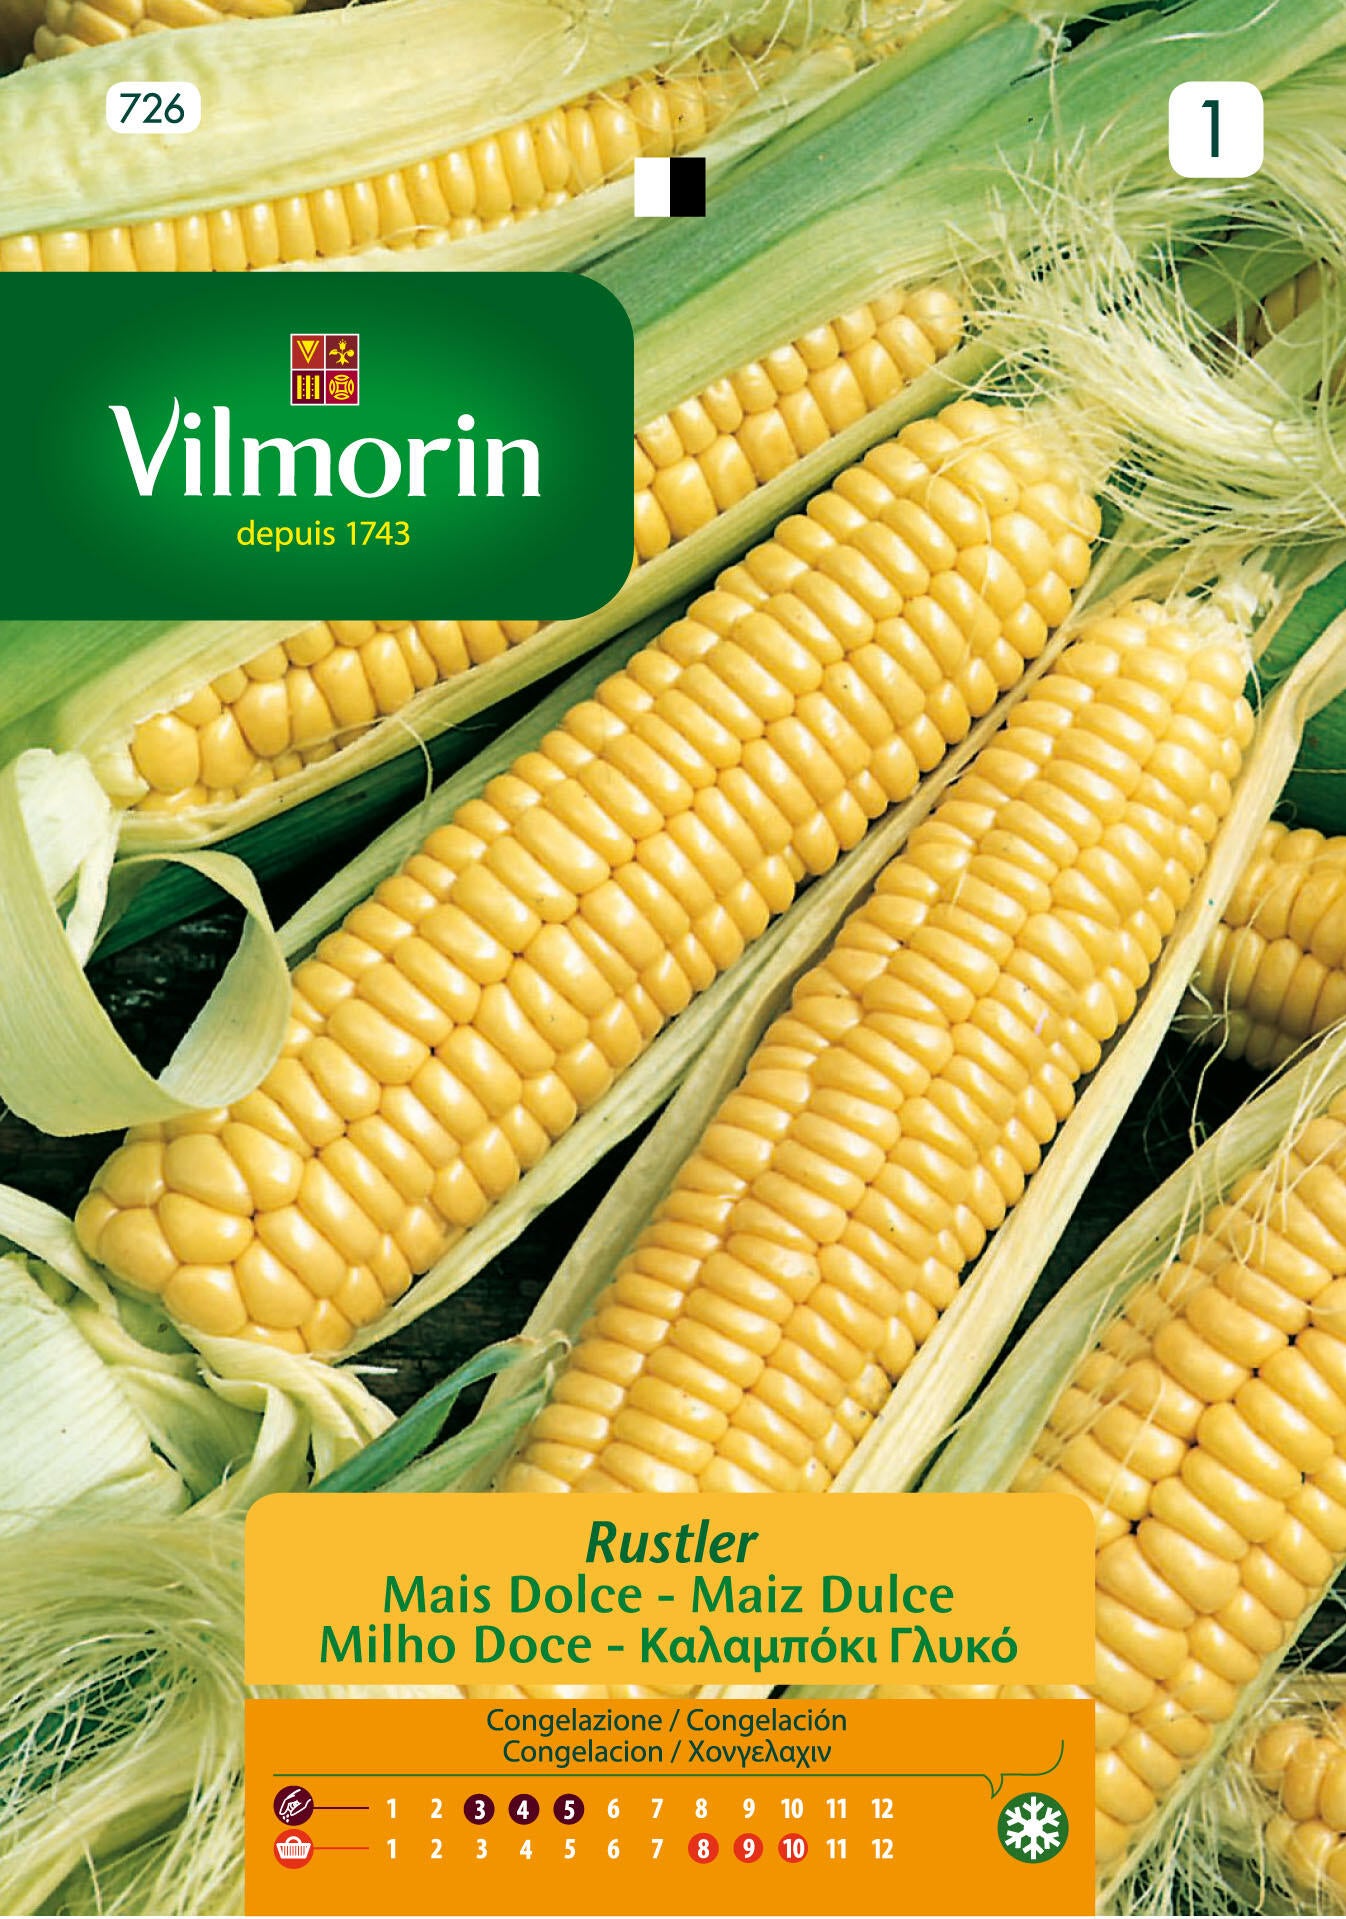 Cómo utilizar los diferentes tipos de maíz? | Leroy Merlin